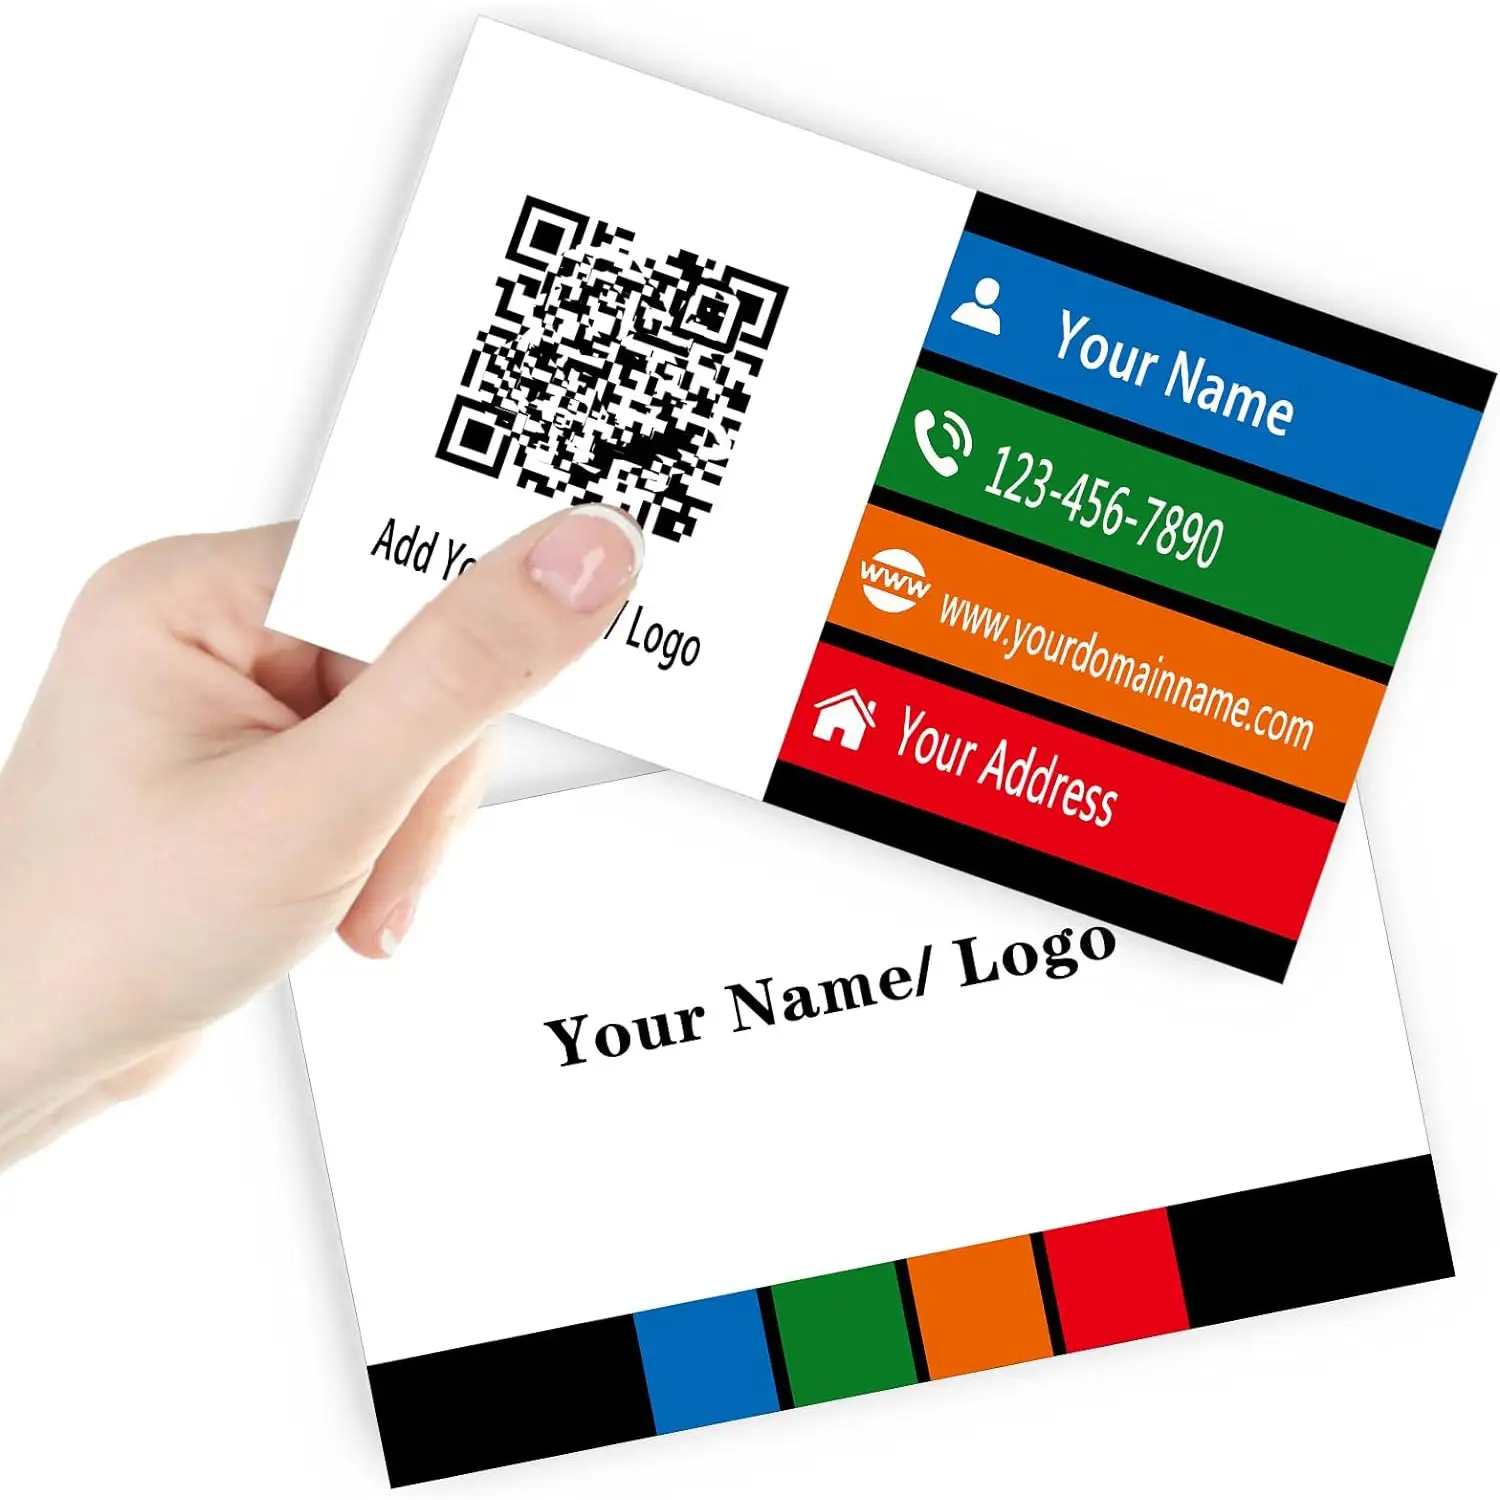 Cartões de Visita com Design personalizado Logotipo, texto, cartões de Visita personalizados deixam uma Impressão Positiva e são perfeitos para Networking